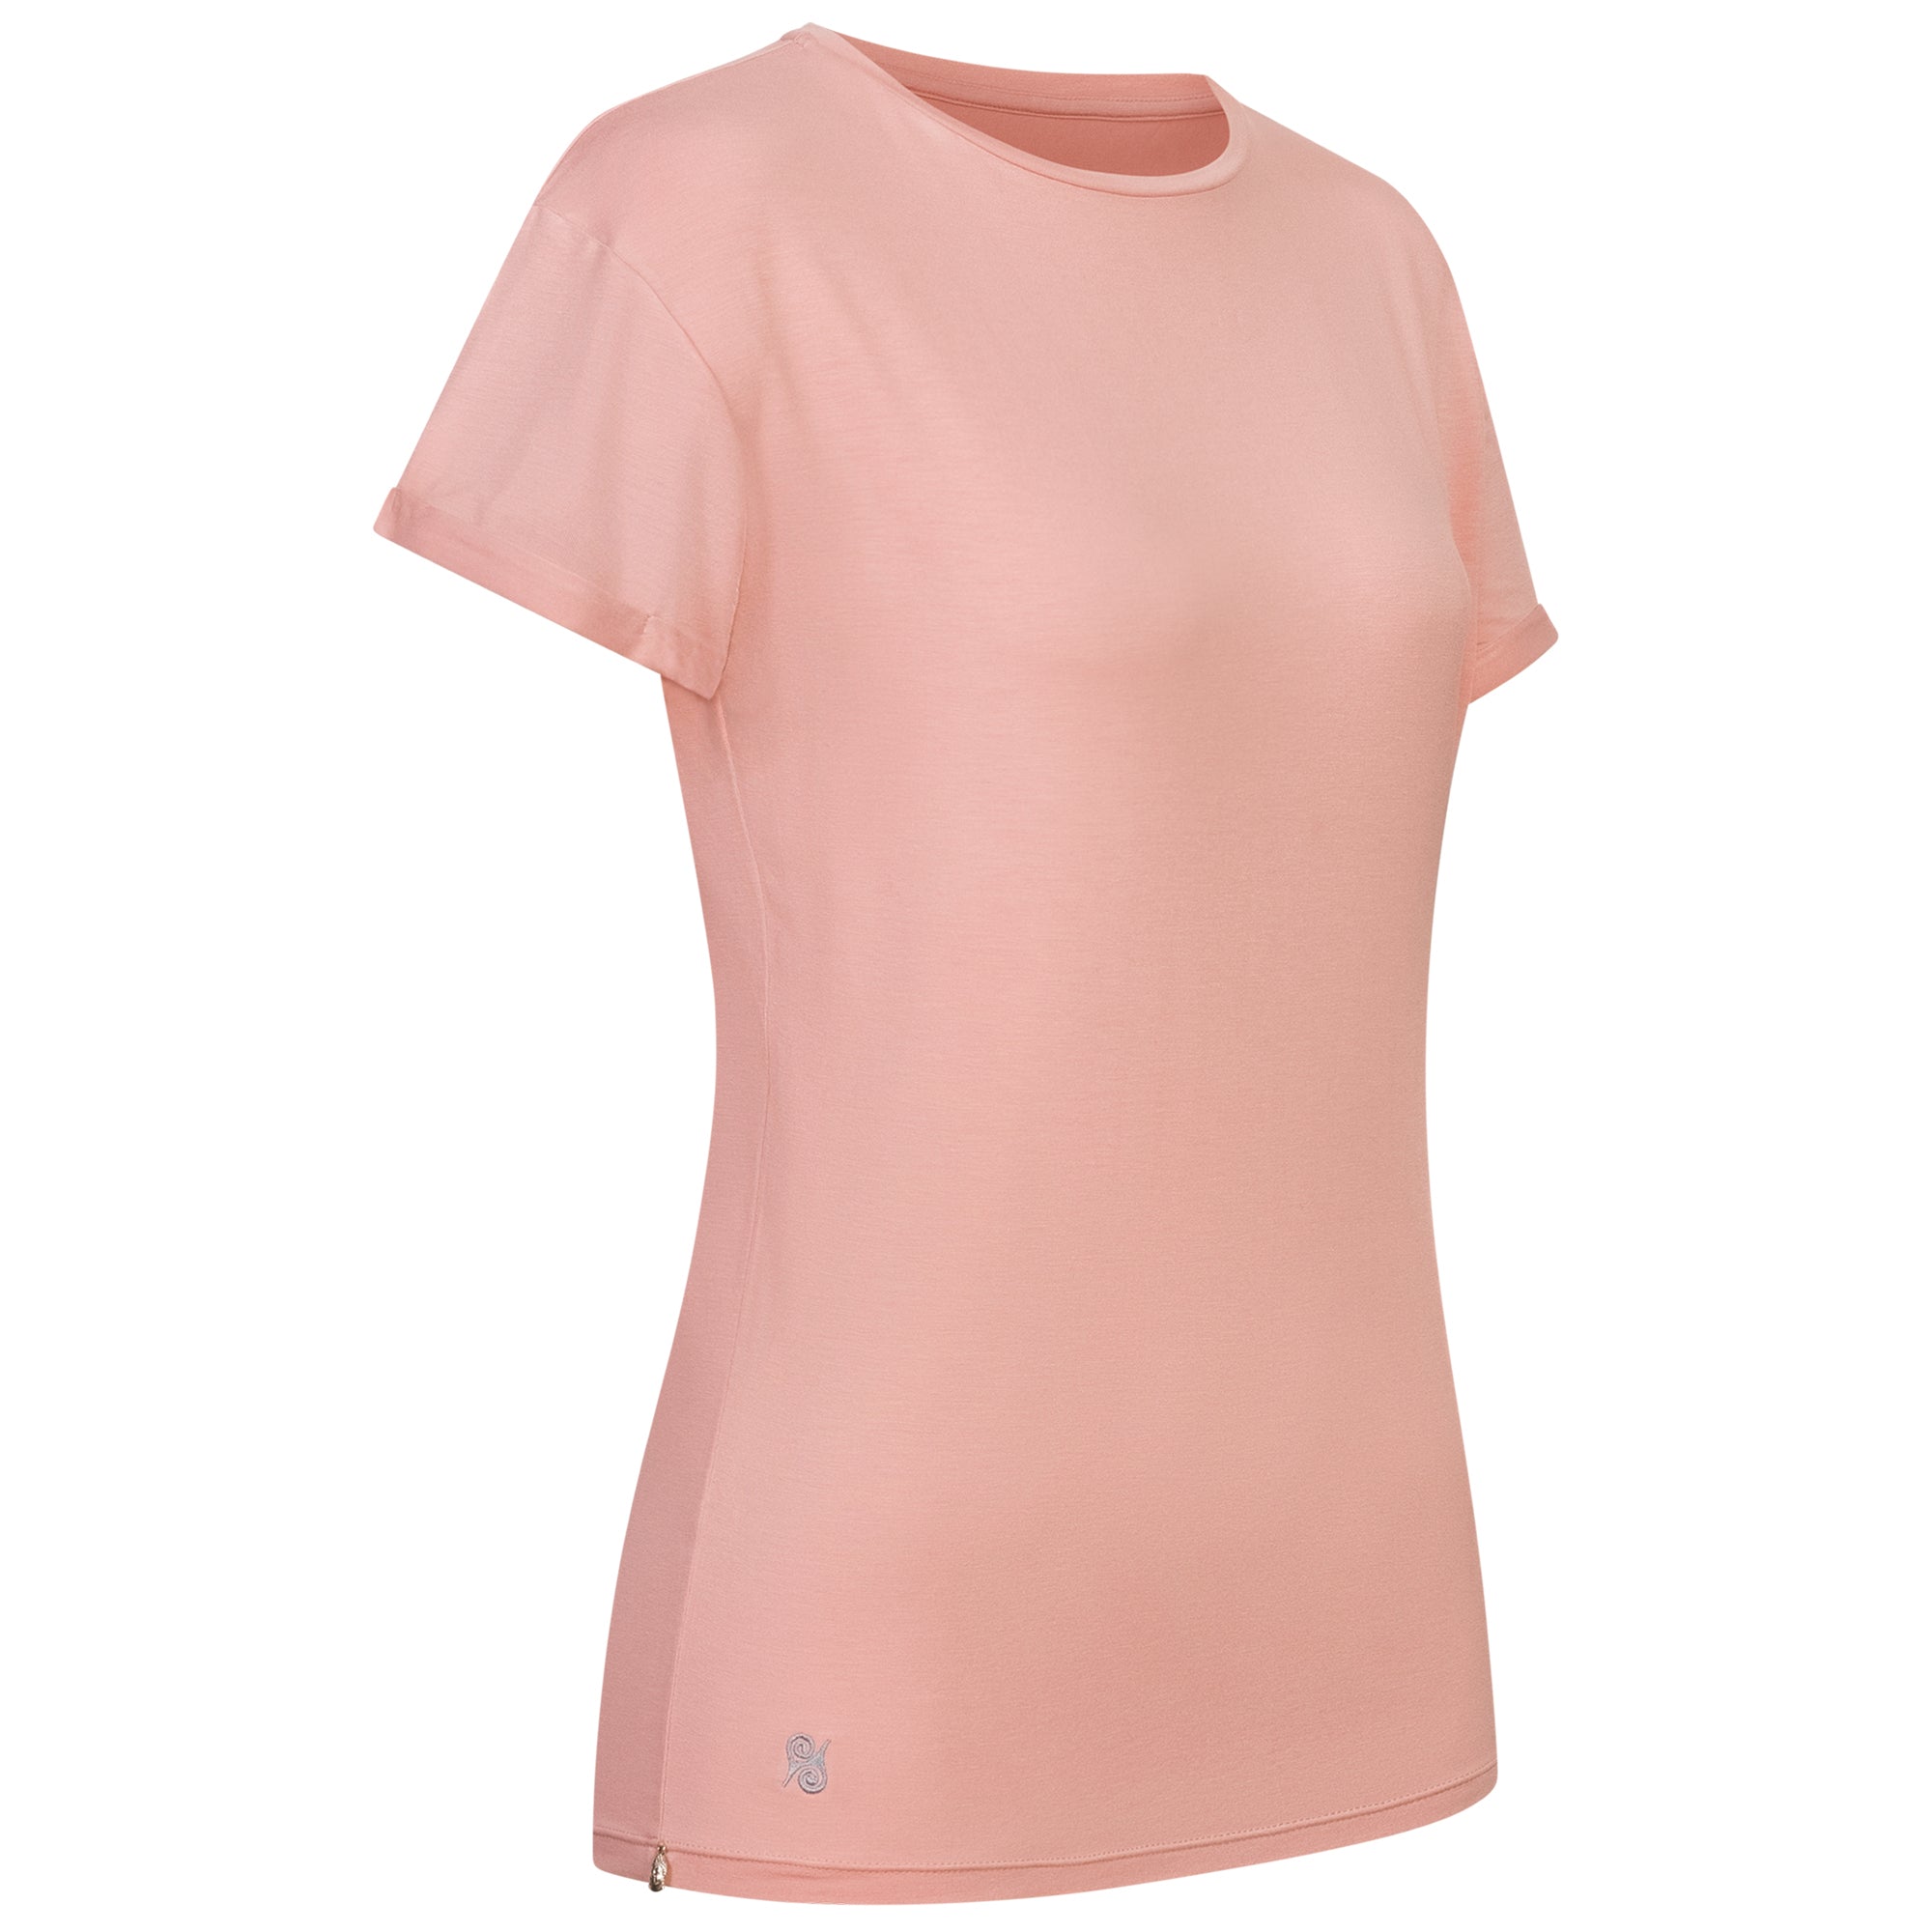 Supersoft Shirt Pink-Rosé NEU